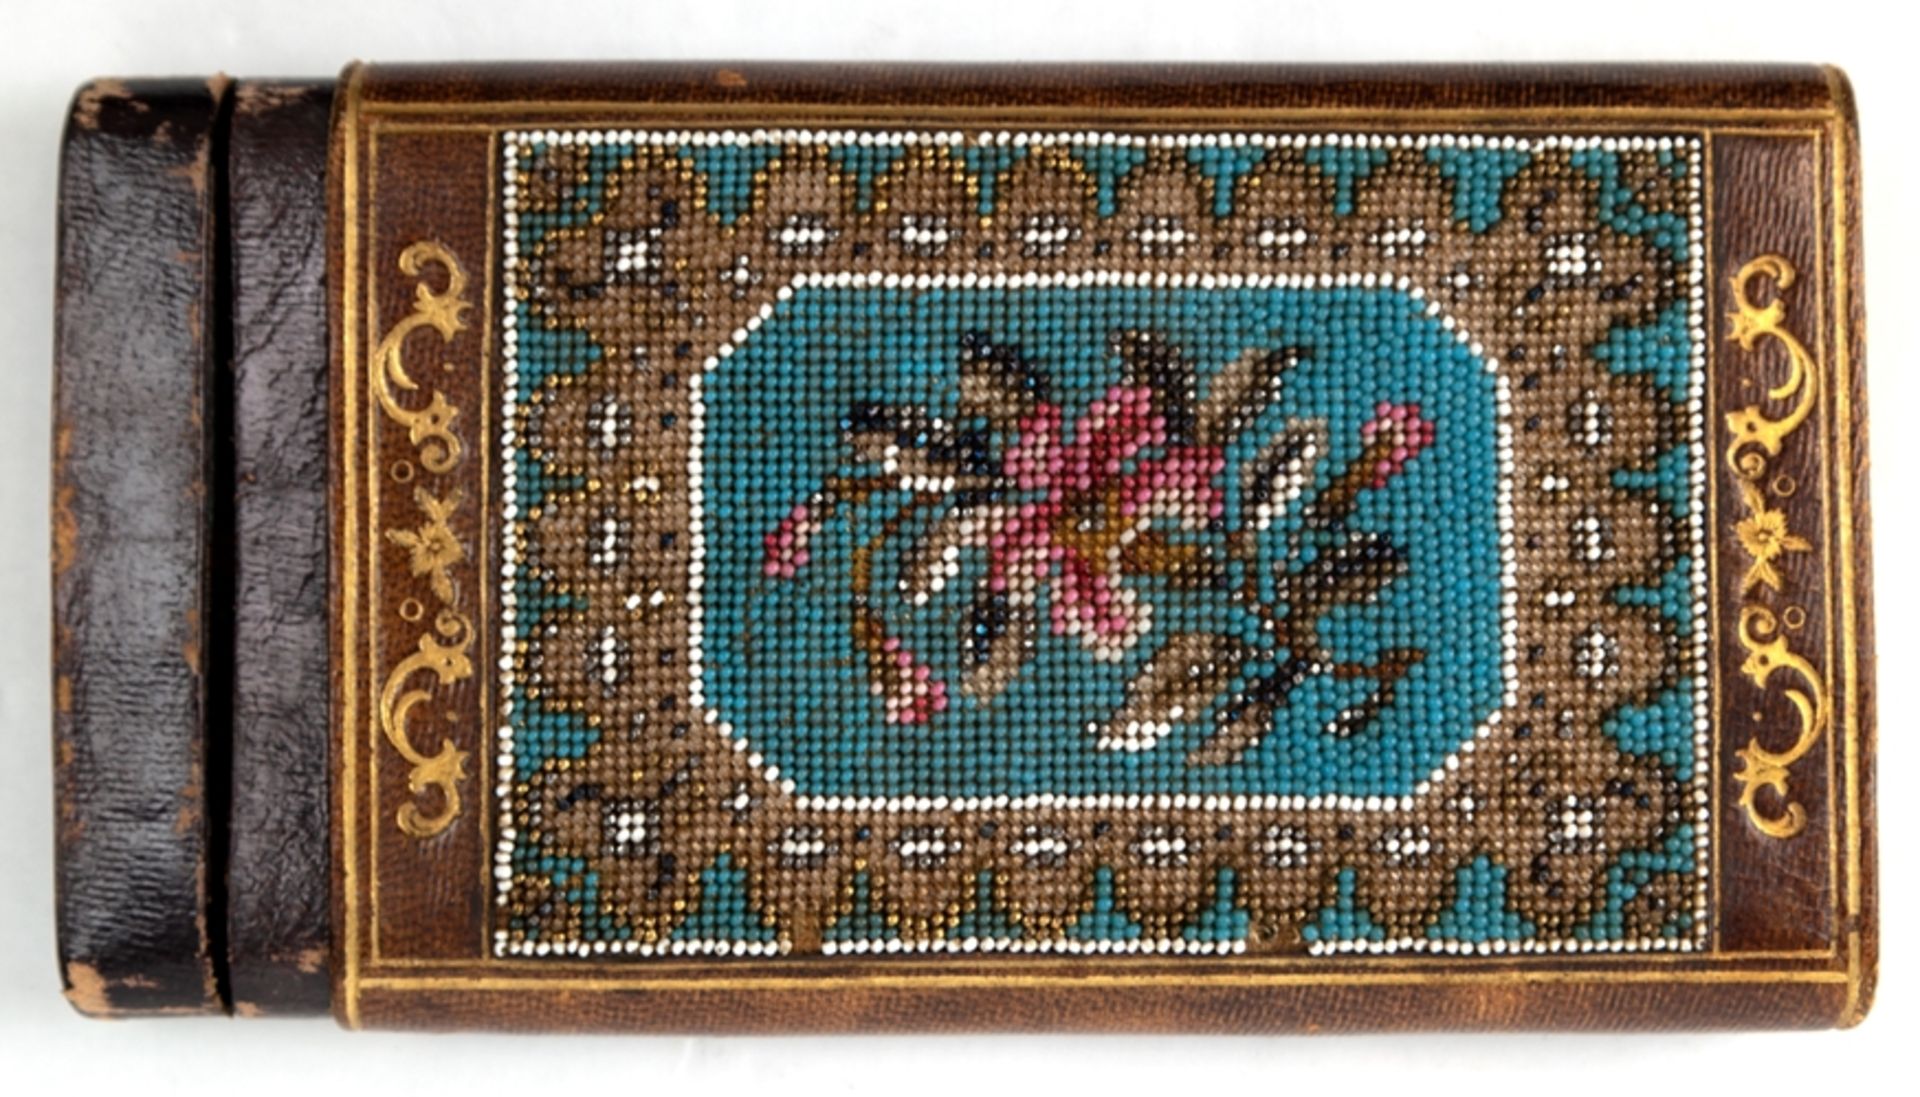 Zigarrenetui "Segars", um 1900, Pappmaché mit Golddruck, Schauseite mit floraler Perlenstickerei (m